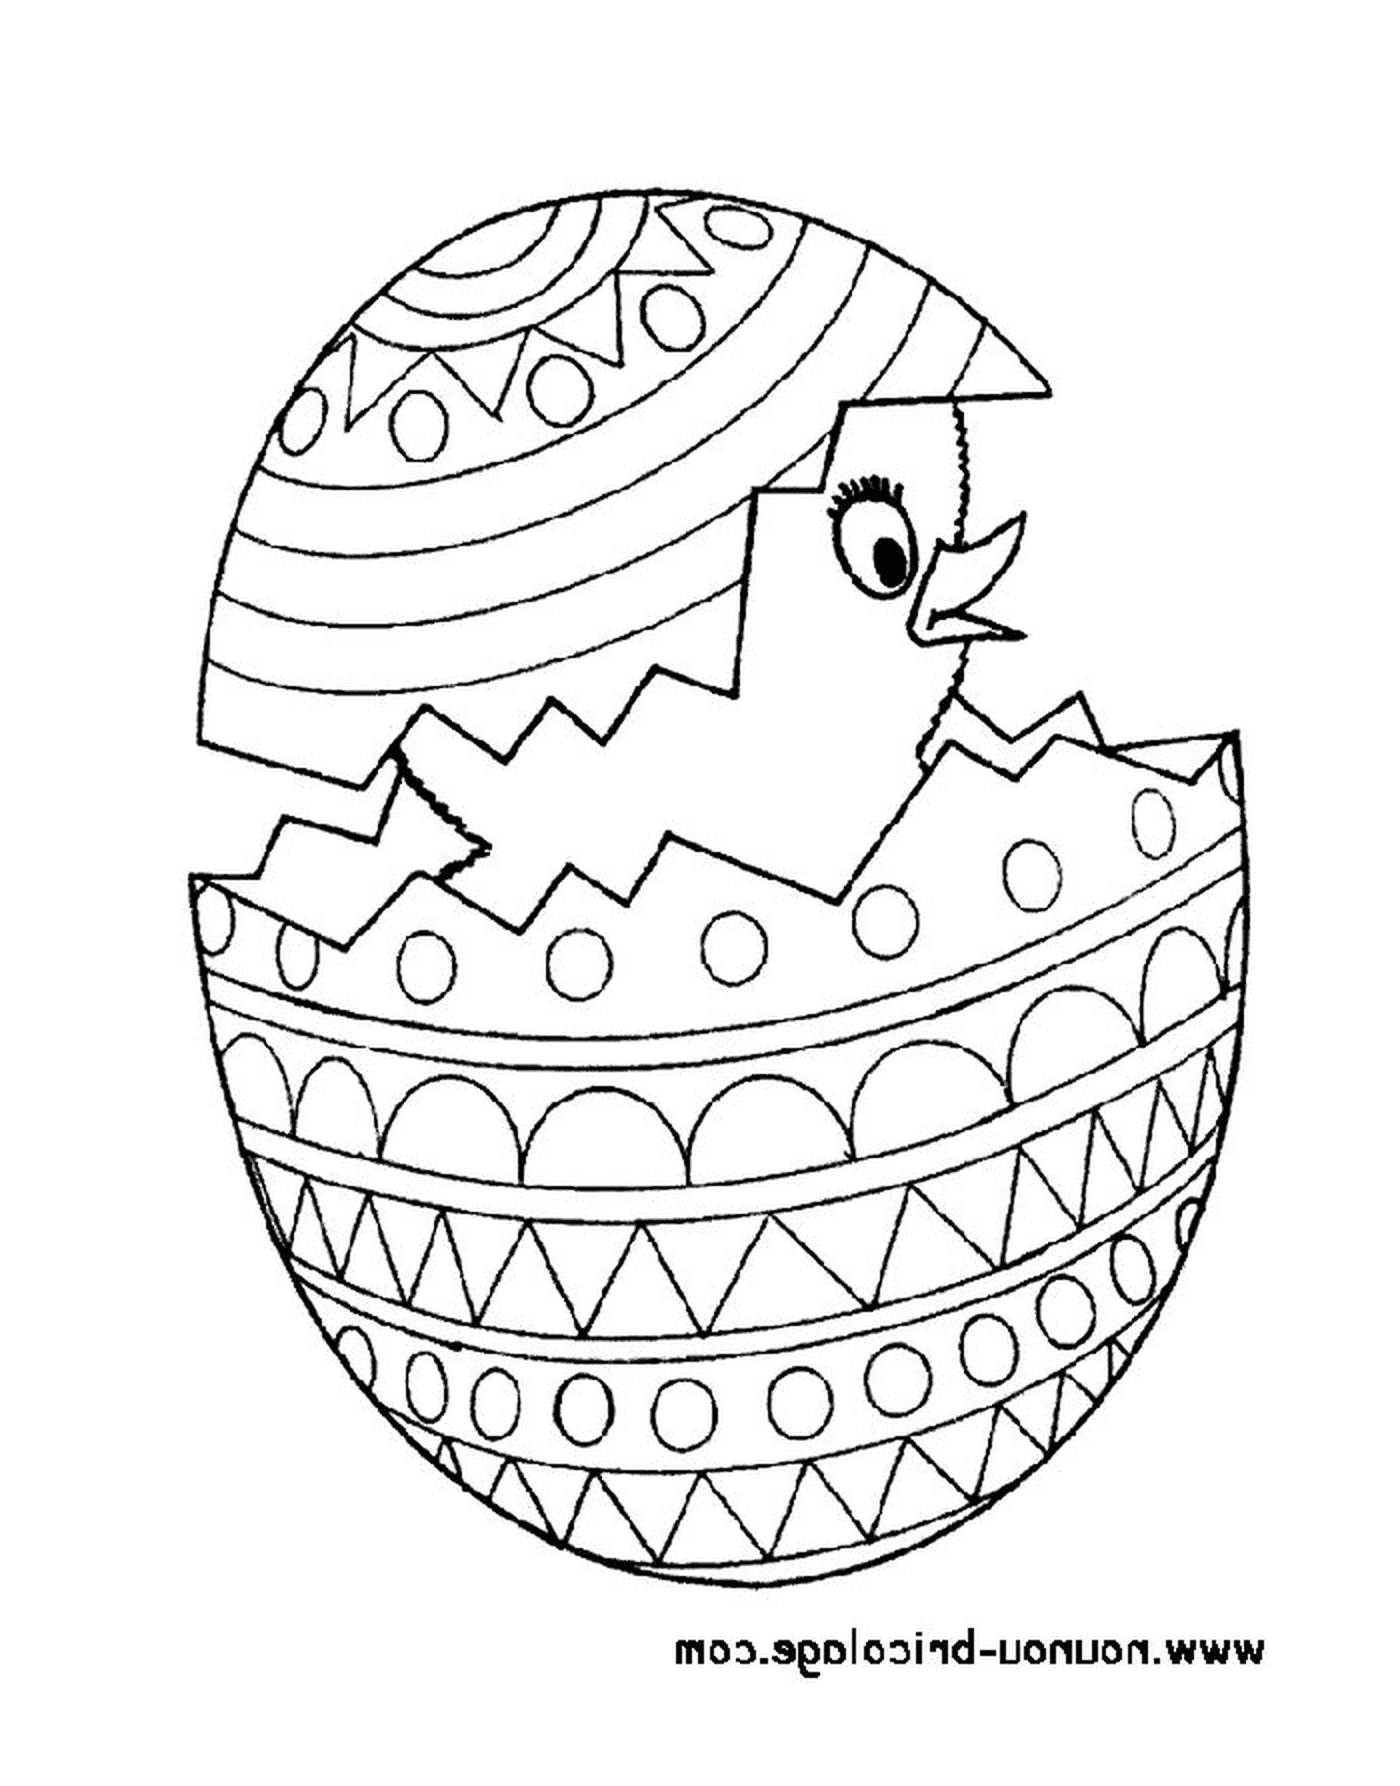  Páscoa 48, um ovo de Páscoa com um pintinho dentro 